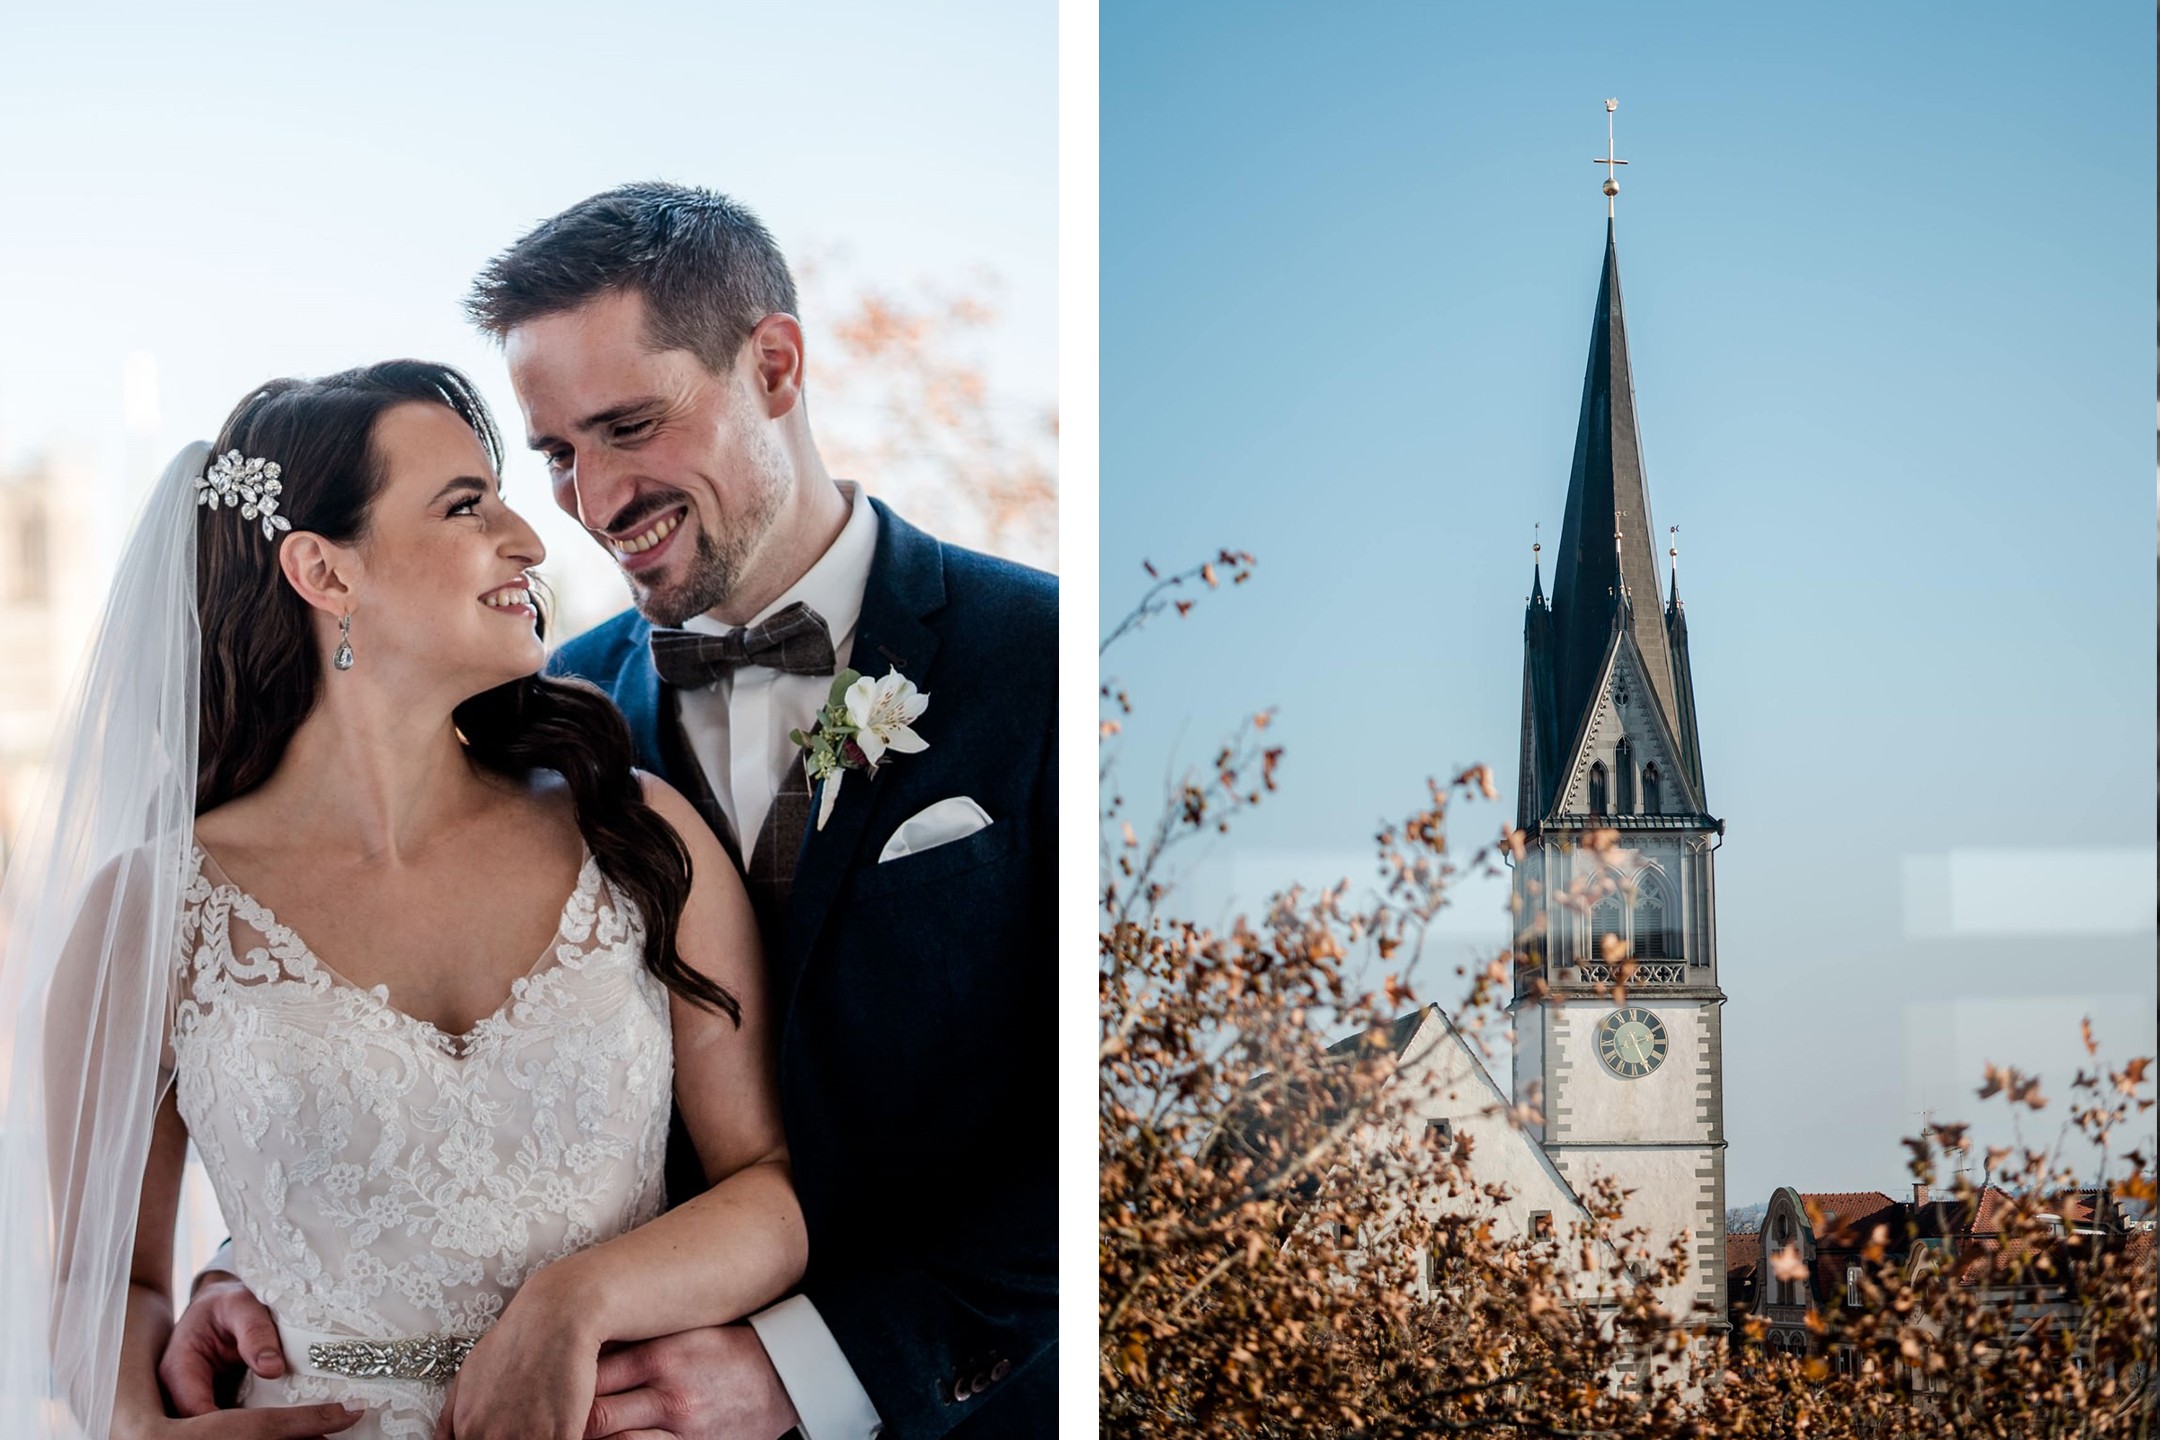 Aida + Tim | Hochzeitsfotografen am Bodensee Hochzeit - Konstanz, Bodensee  - Hochzeitsfotografie von Aida und Tim